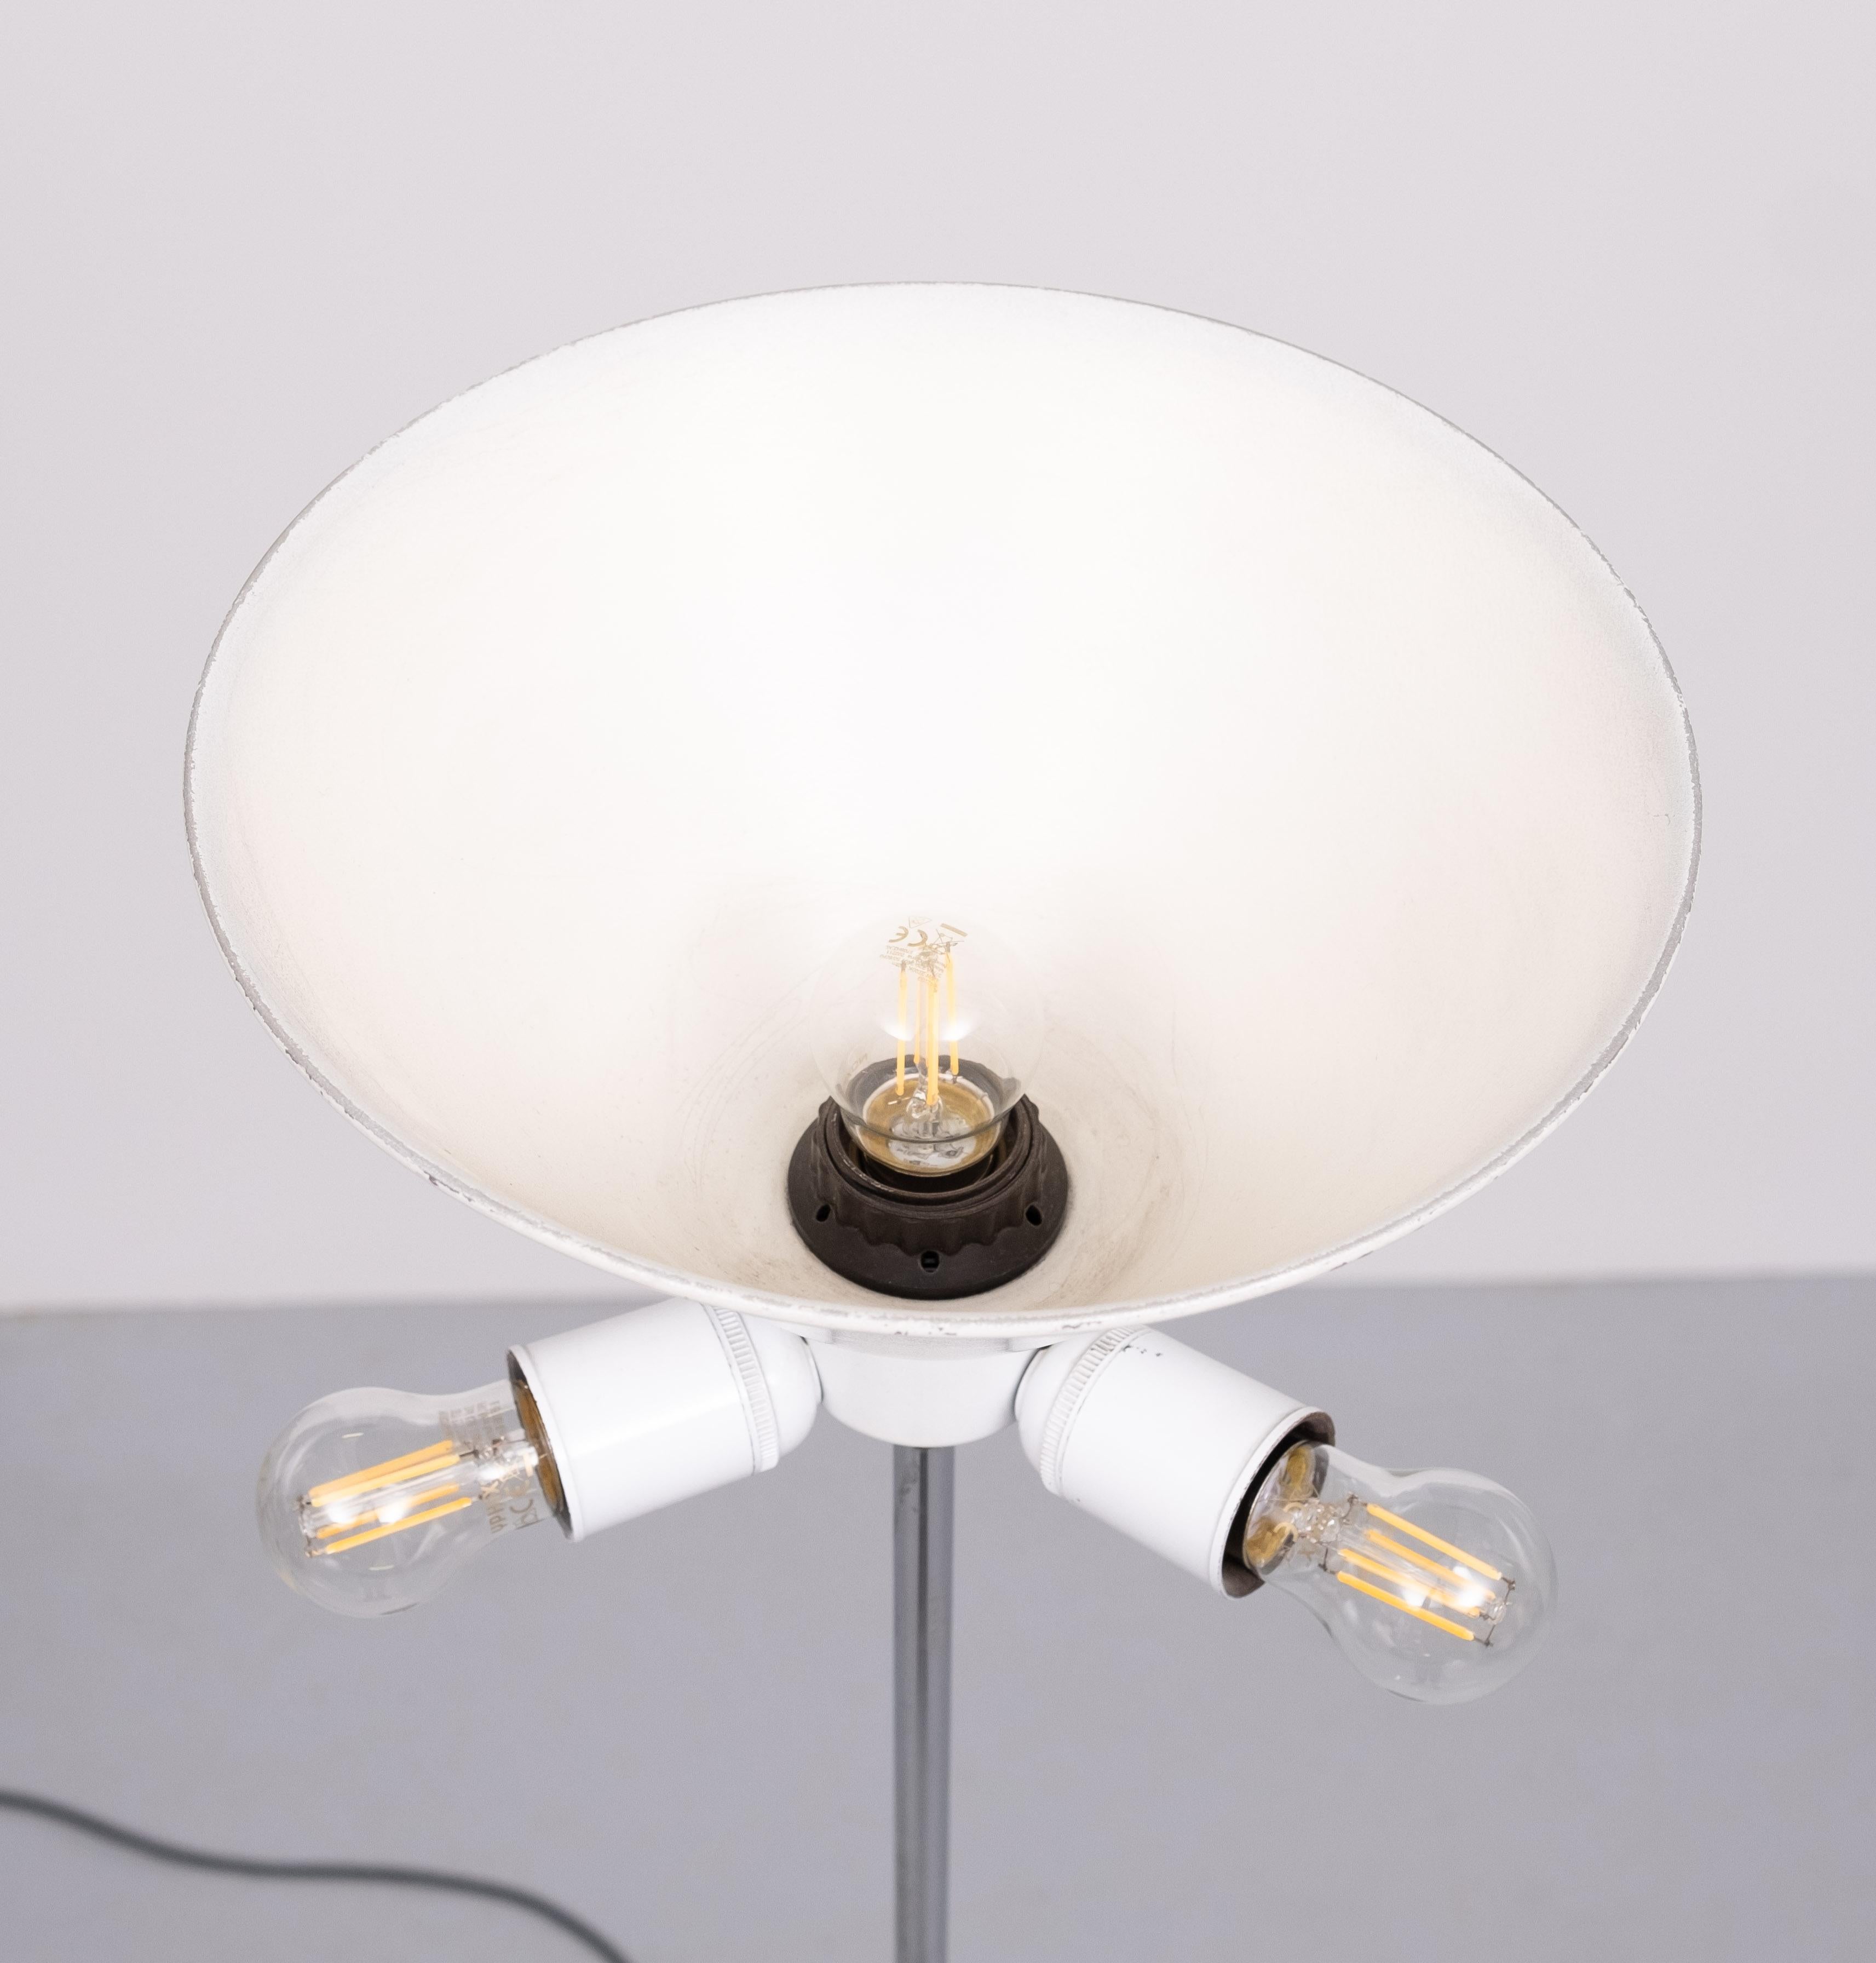 Staff  Leuchten  Adjustable floor lamp   1960s Germany  In Good Condition For Sale In Den Haag, NL